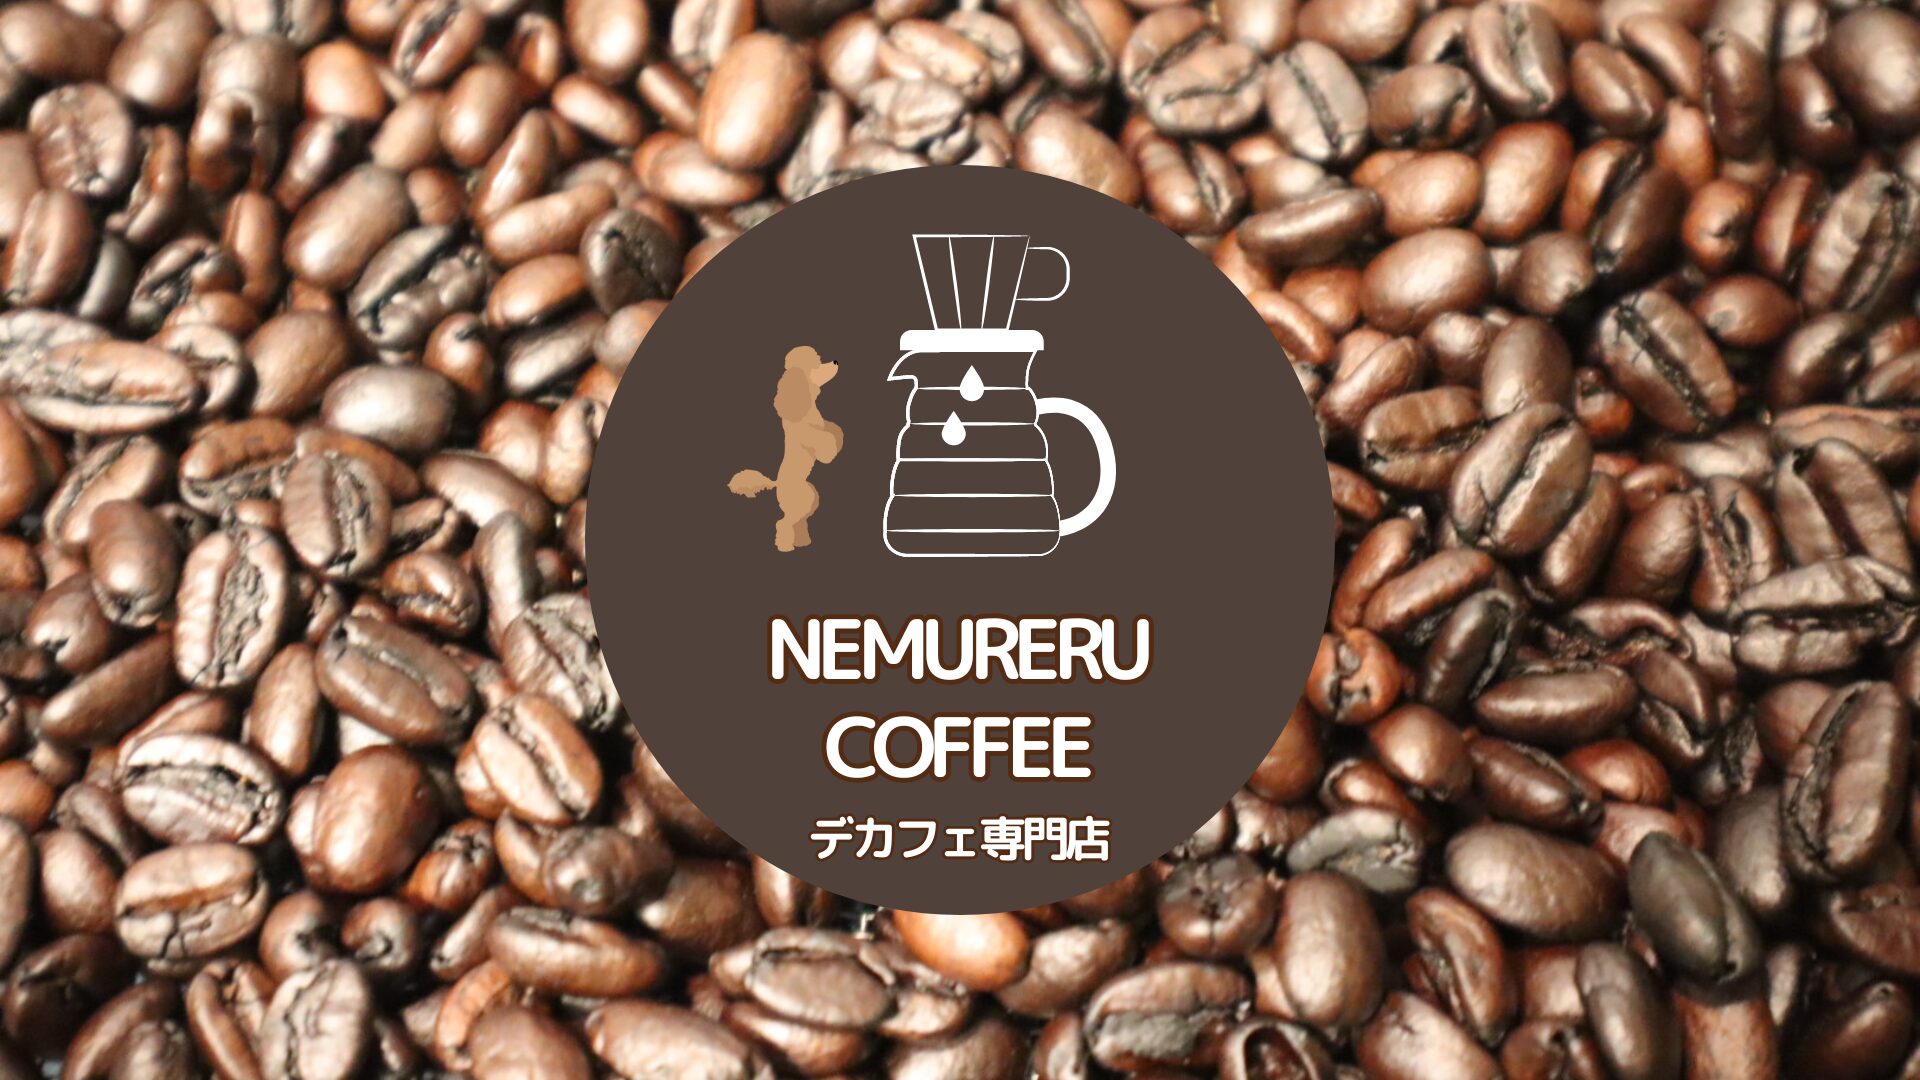 【加盟情報】nemureru coffee